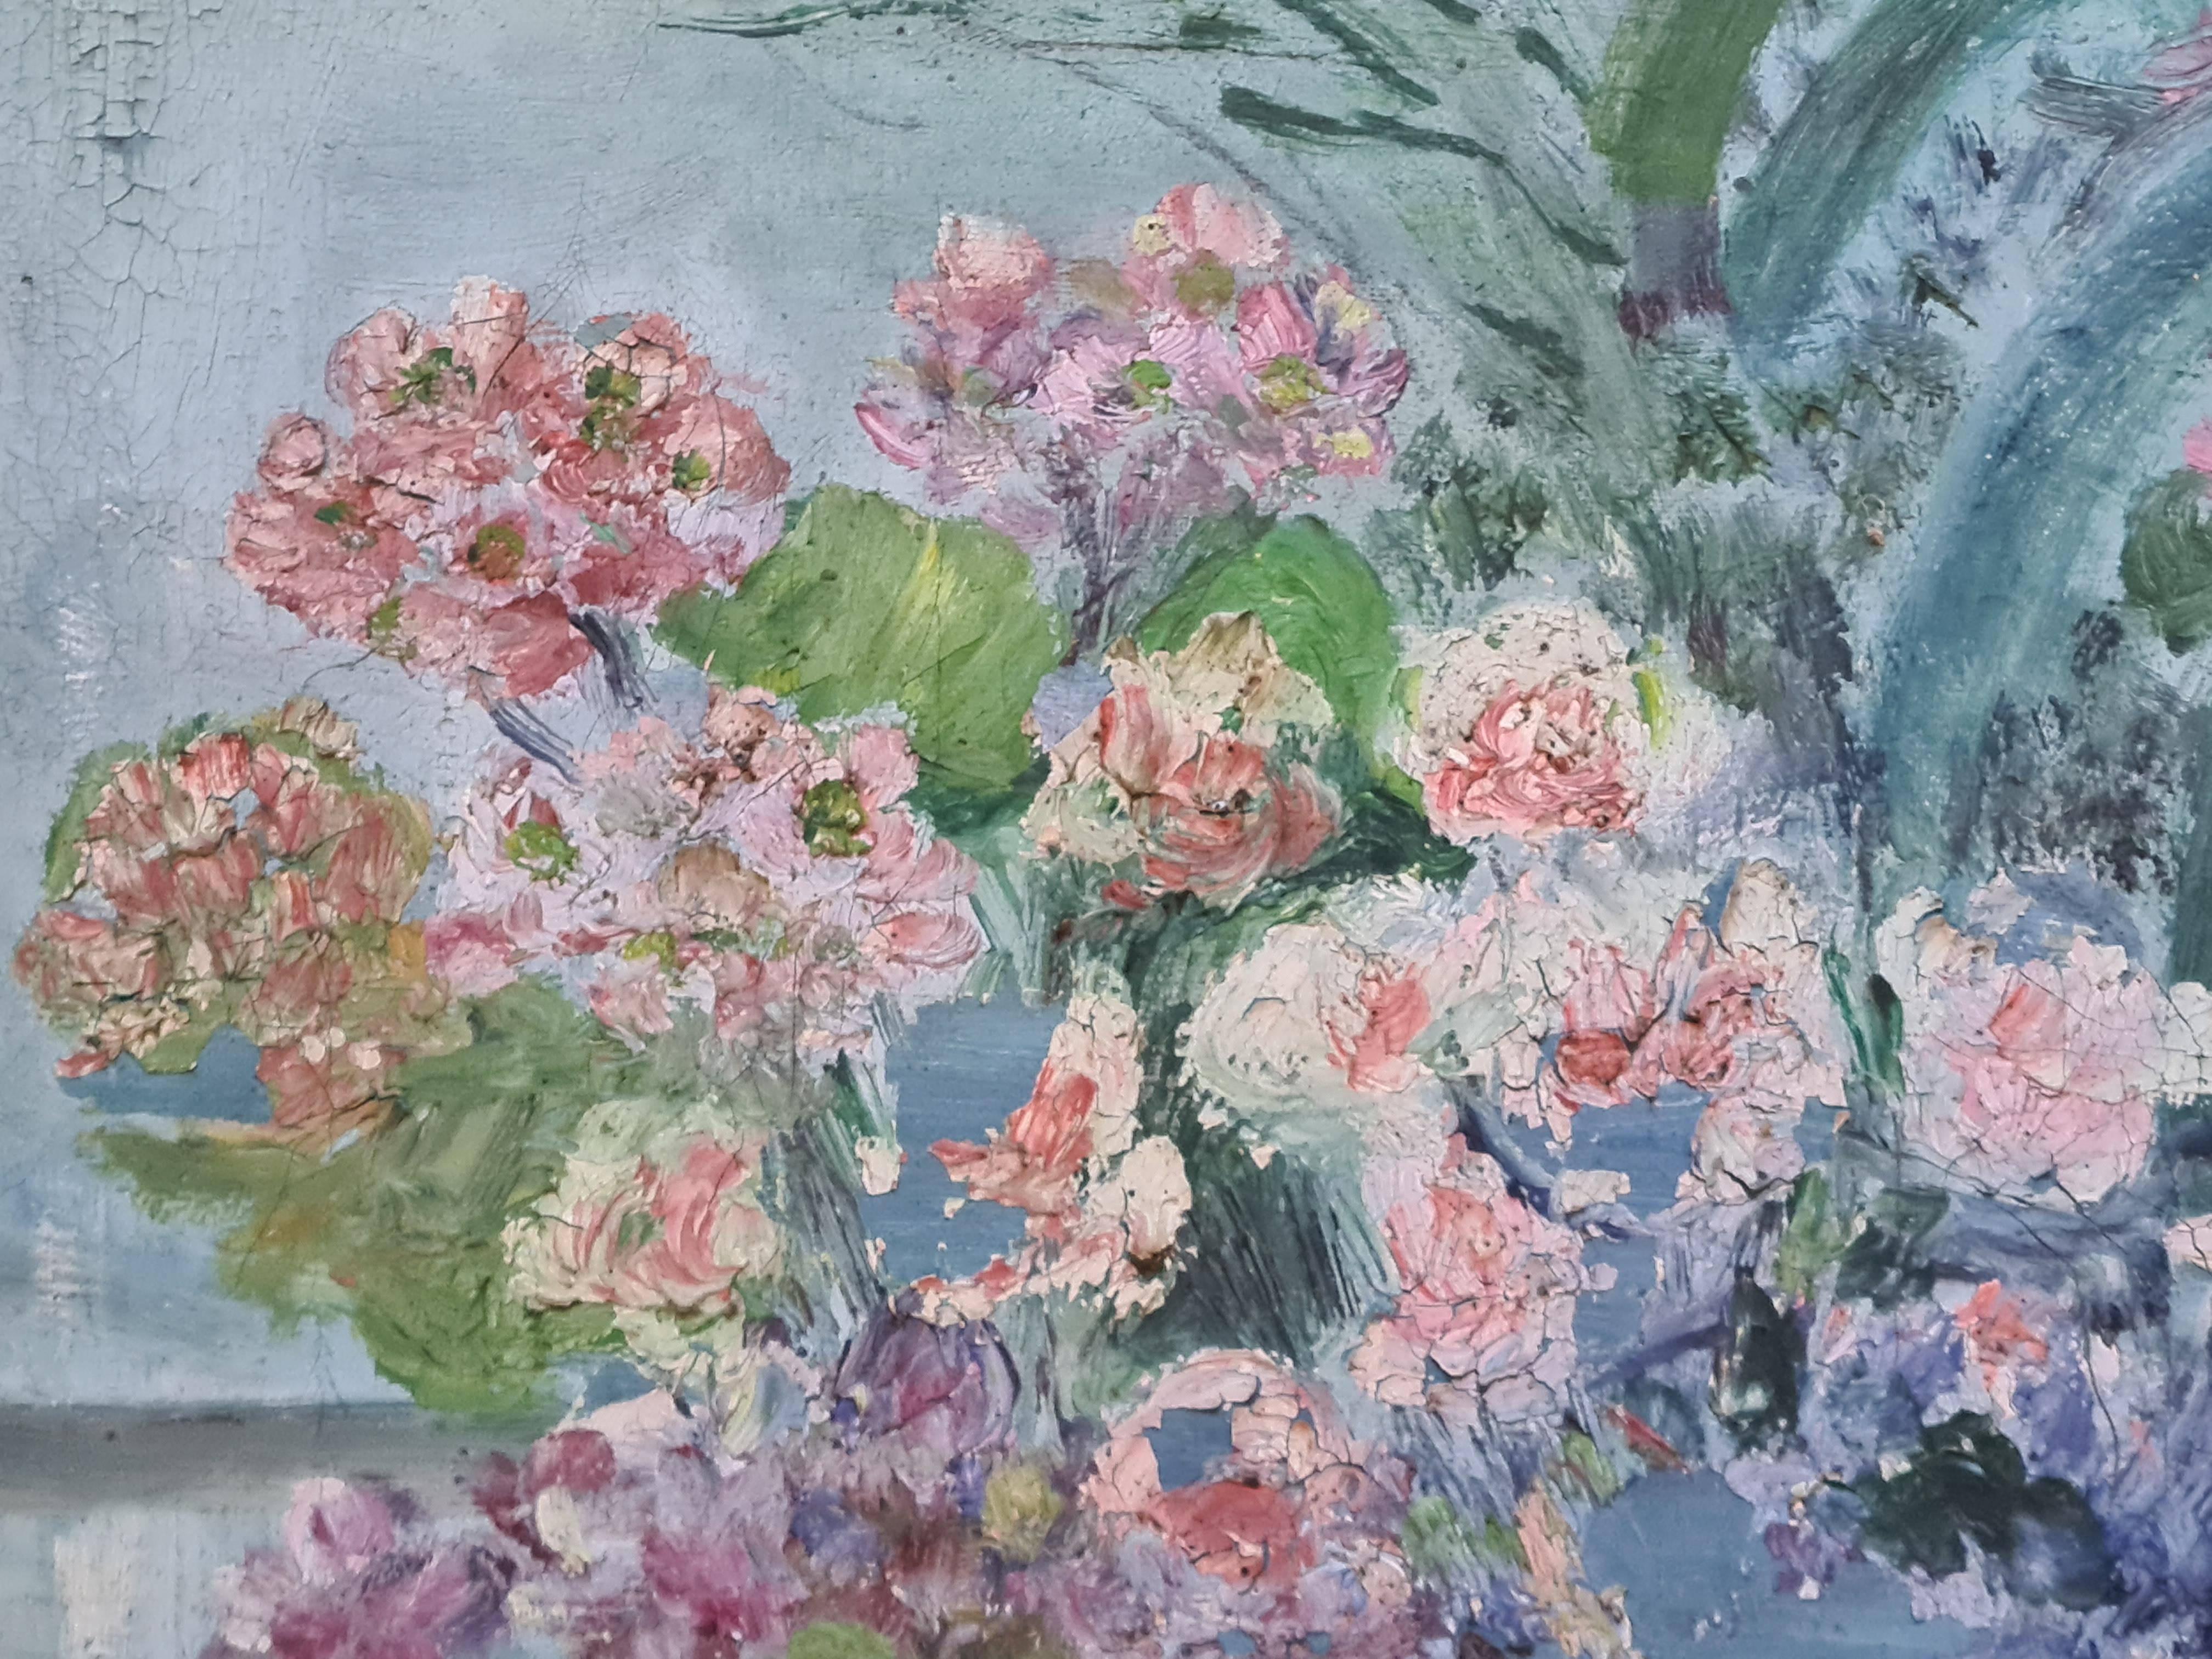 Vue d'un intérieur impressionniste français, abondance florale, vue d'une fenêtre - Impressionnisme Painting par June Fortan